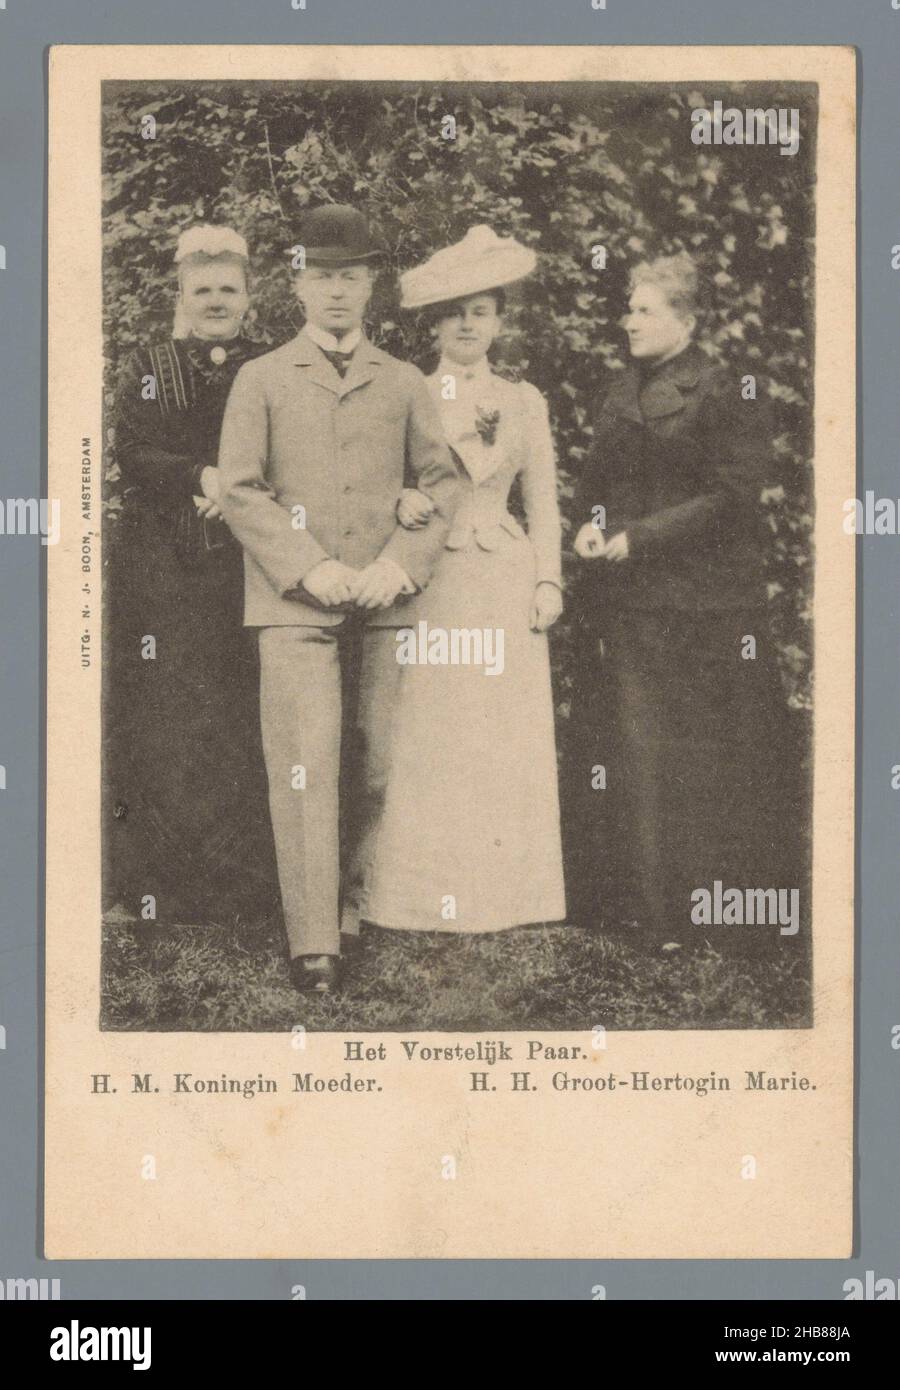 La coppia reale. H.M. regina madre. H.H. grande duchessa Marie (titolo in oggetto), anonima, anonima, Amsterdam, 1901, cartone, collotipo, altezza 133 mm x larghezza 91 mm Foto Stock